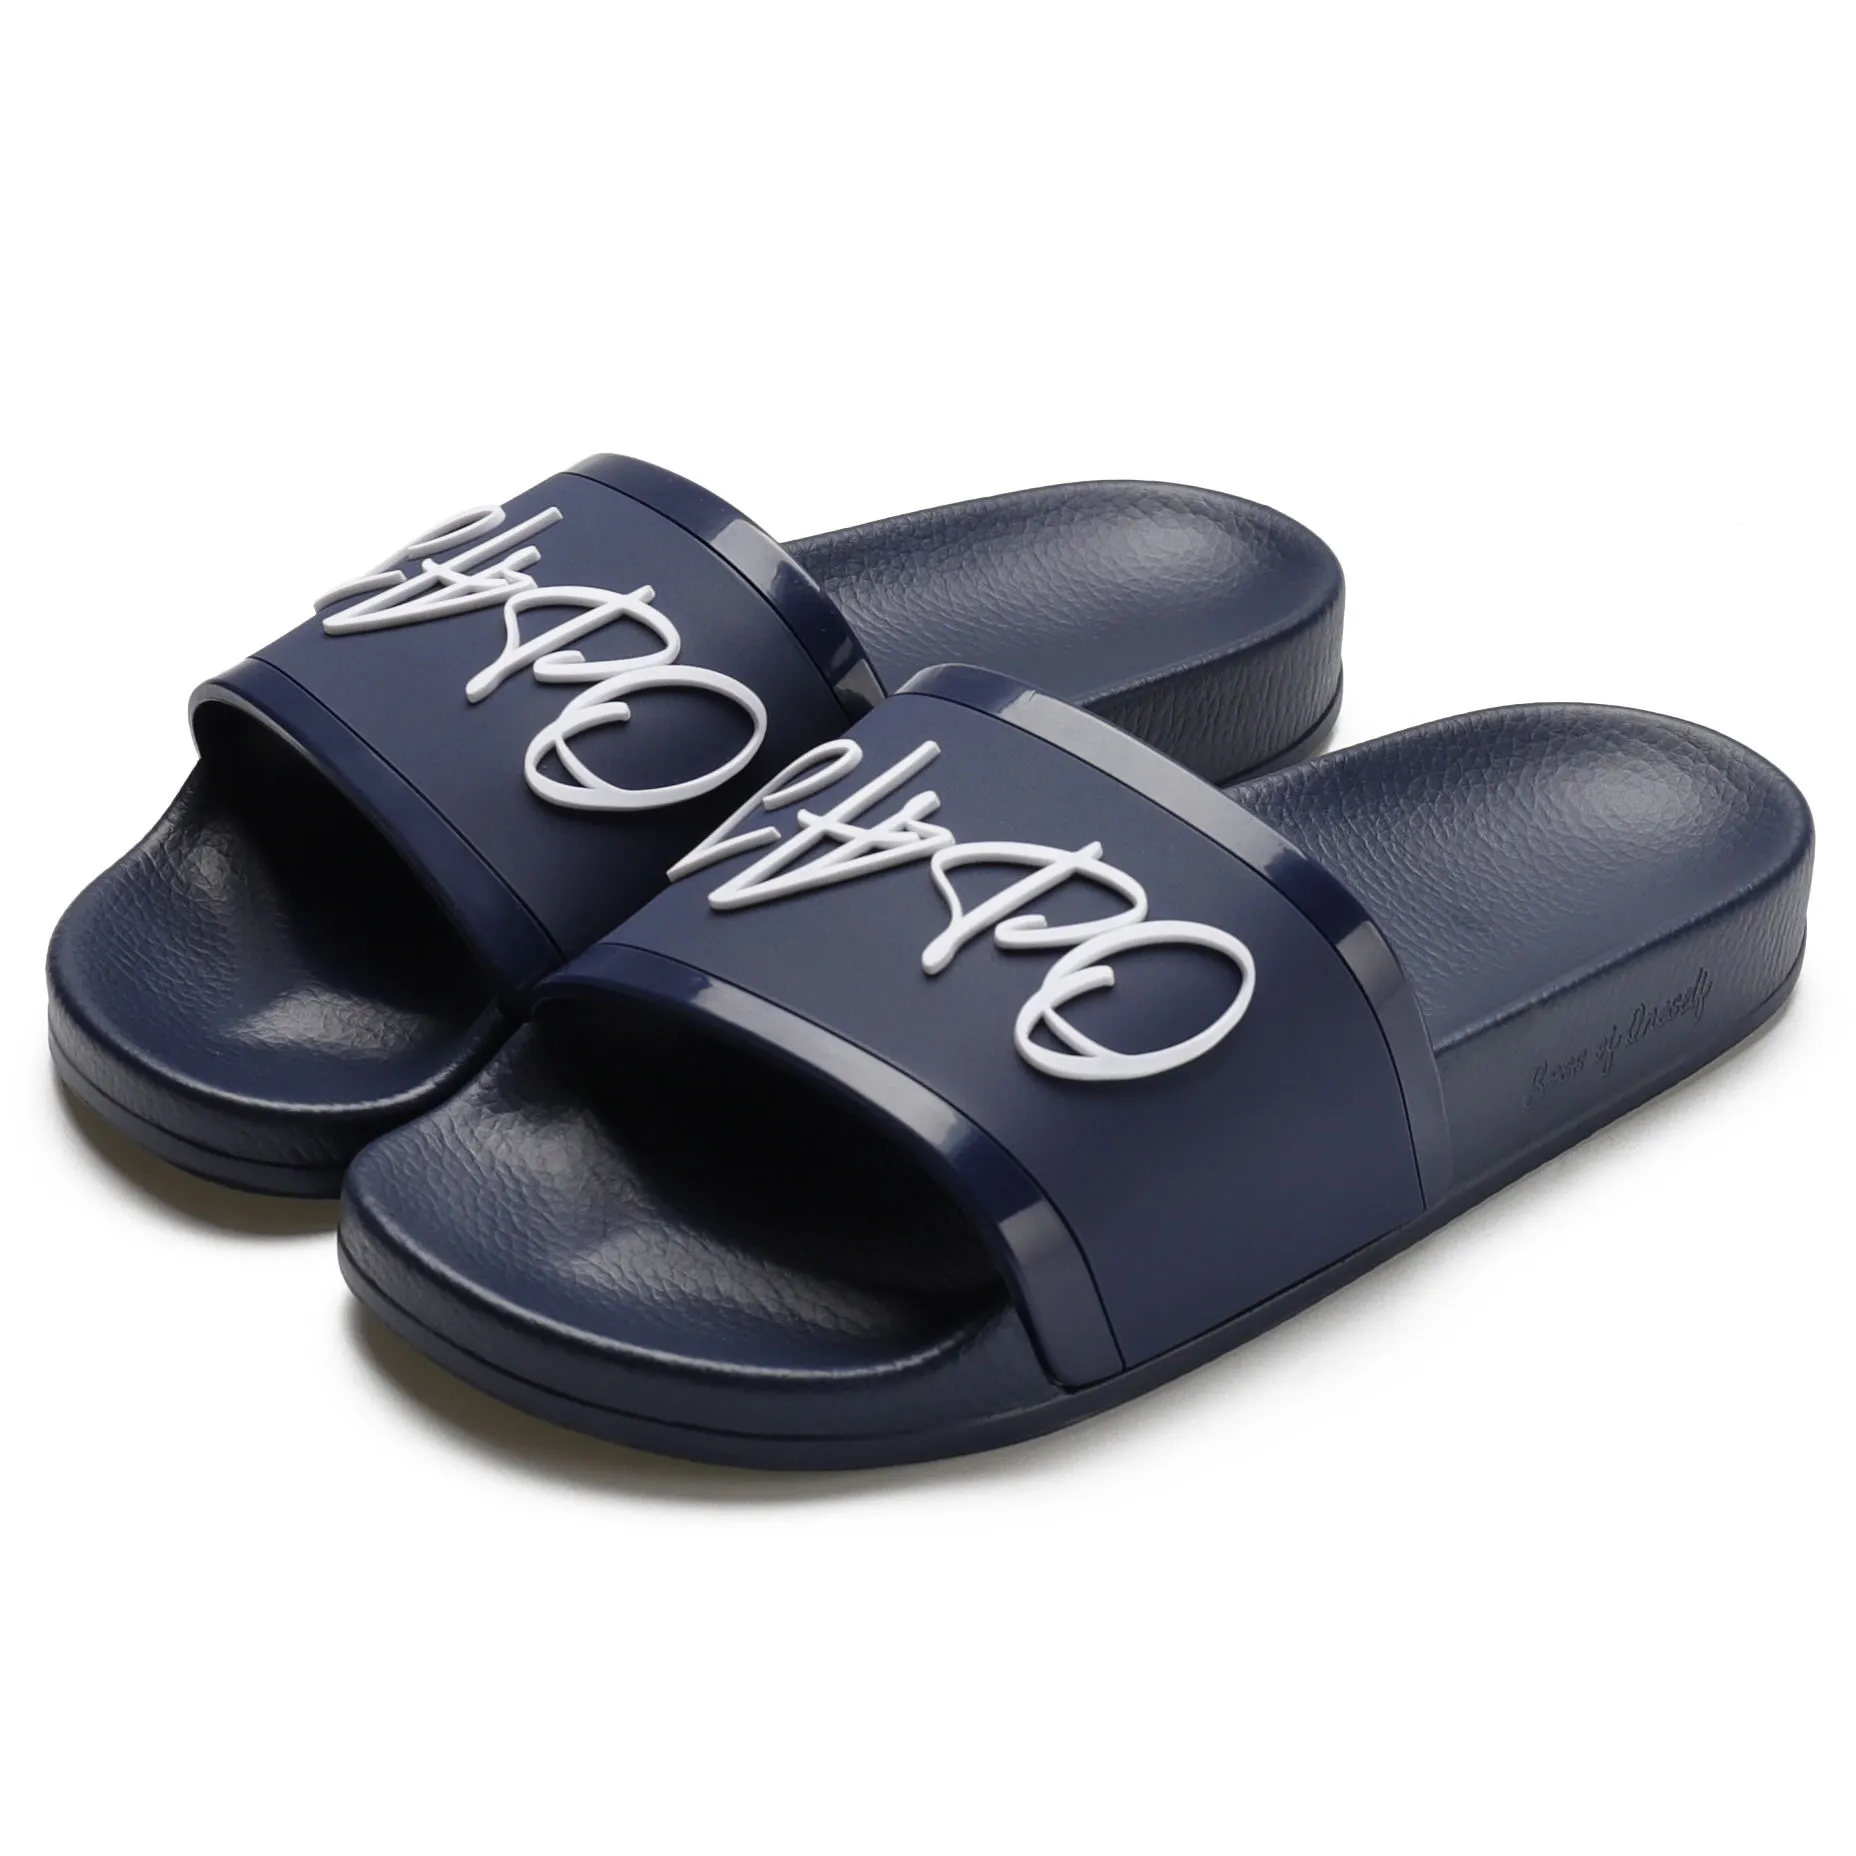 Nicecin yaz plaj spor kauçuk özel Logo moda yumuşak yüksek kalite erkek terlikleri açık sandalet